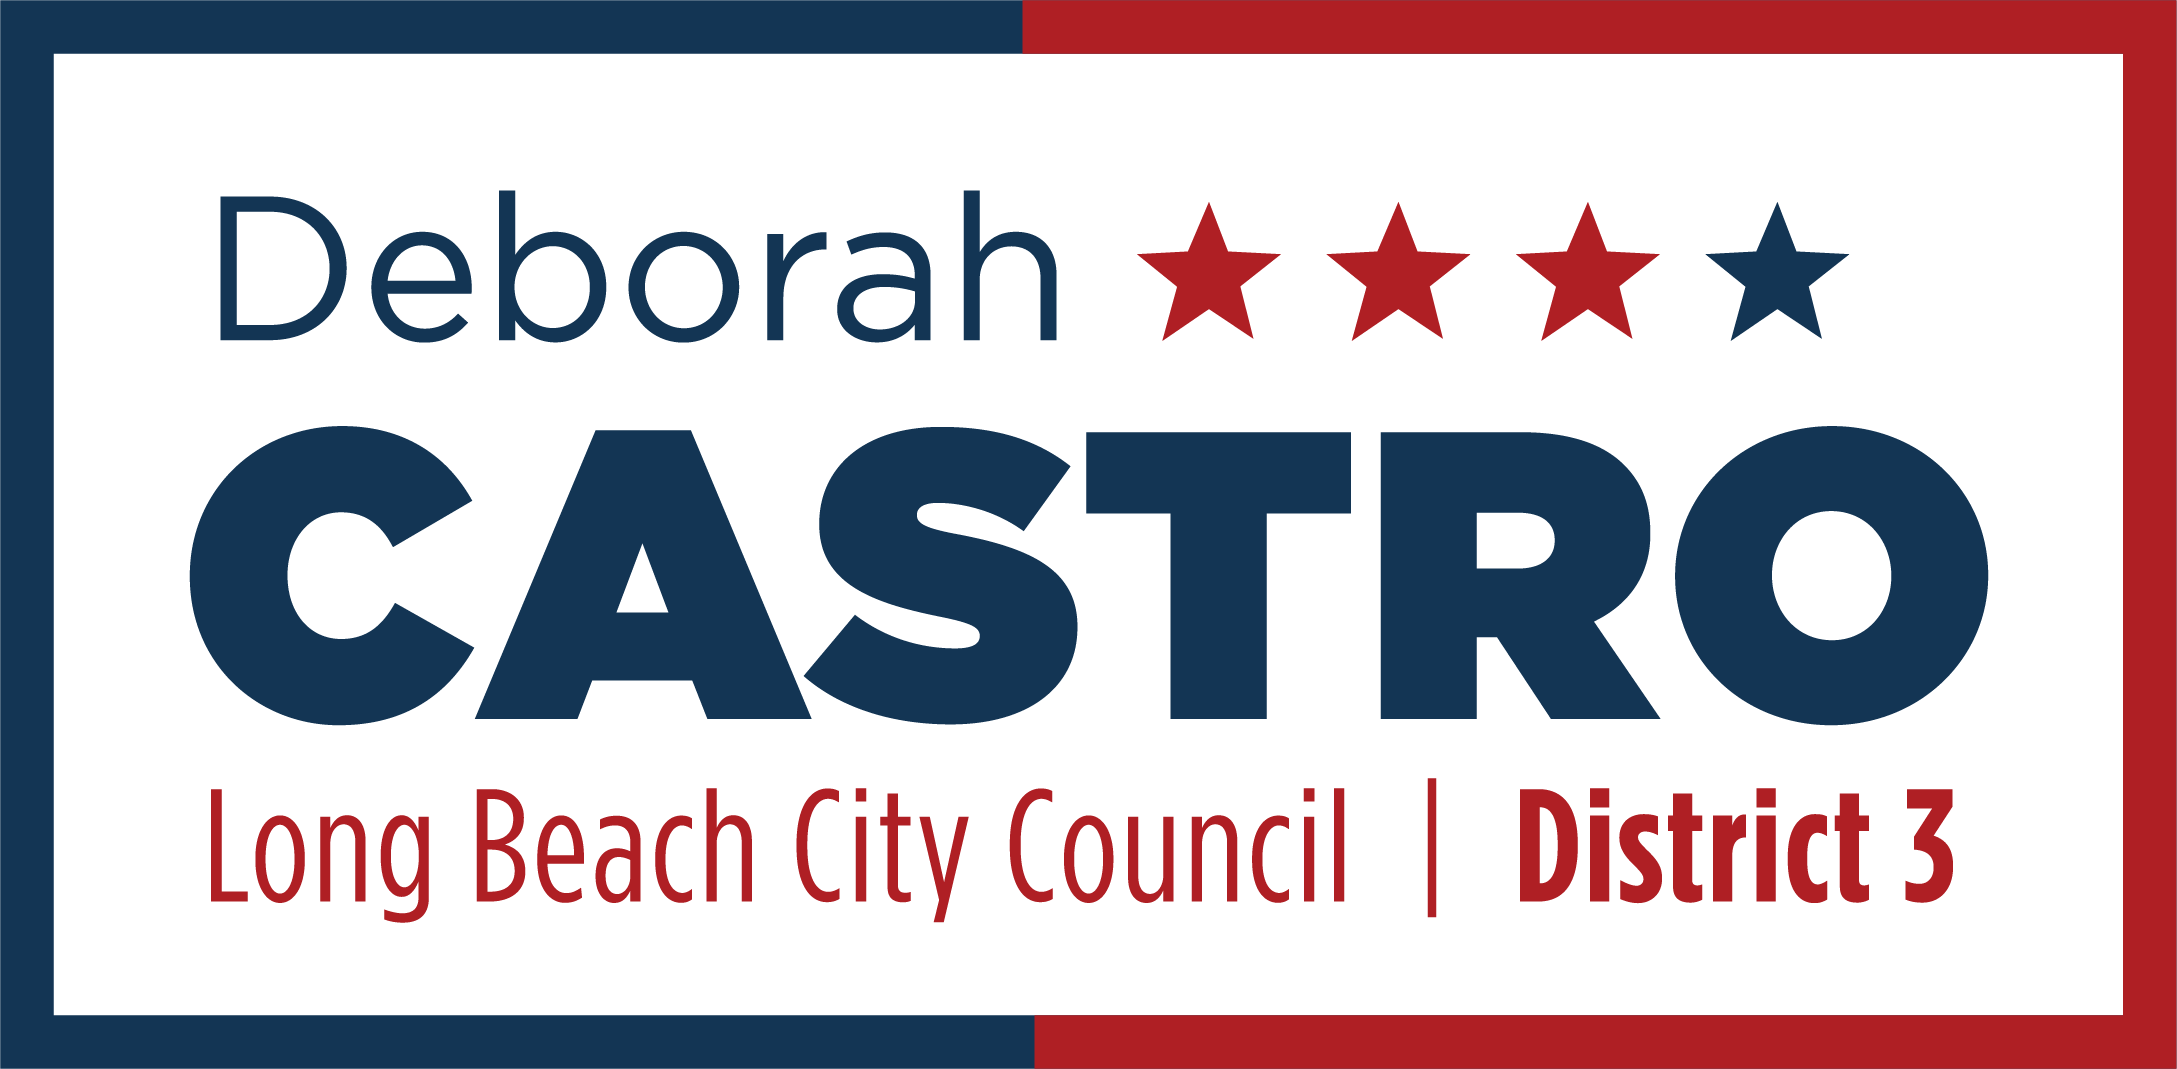 Deborah Castro Campaign Logo